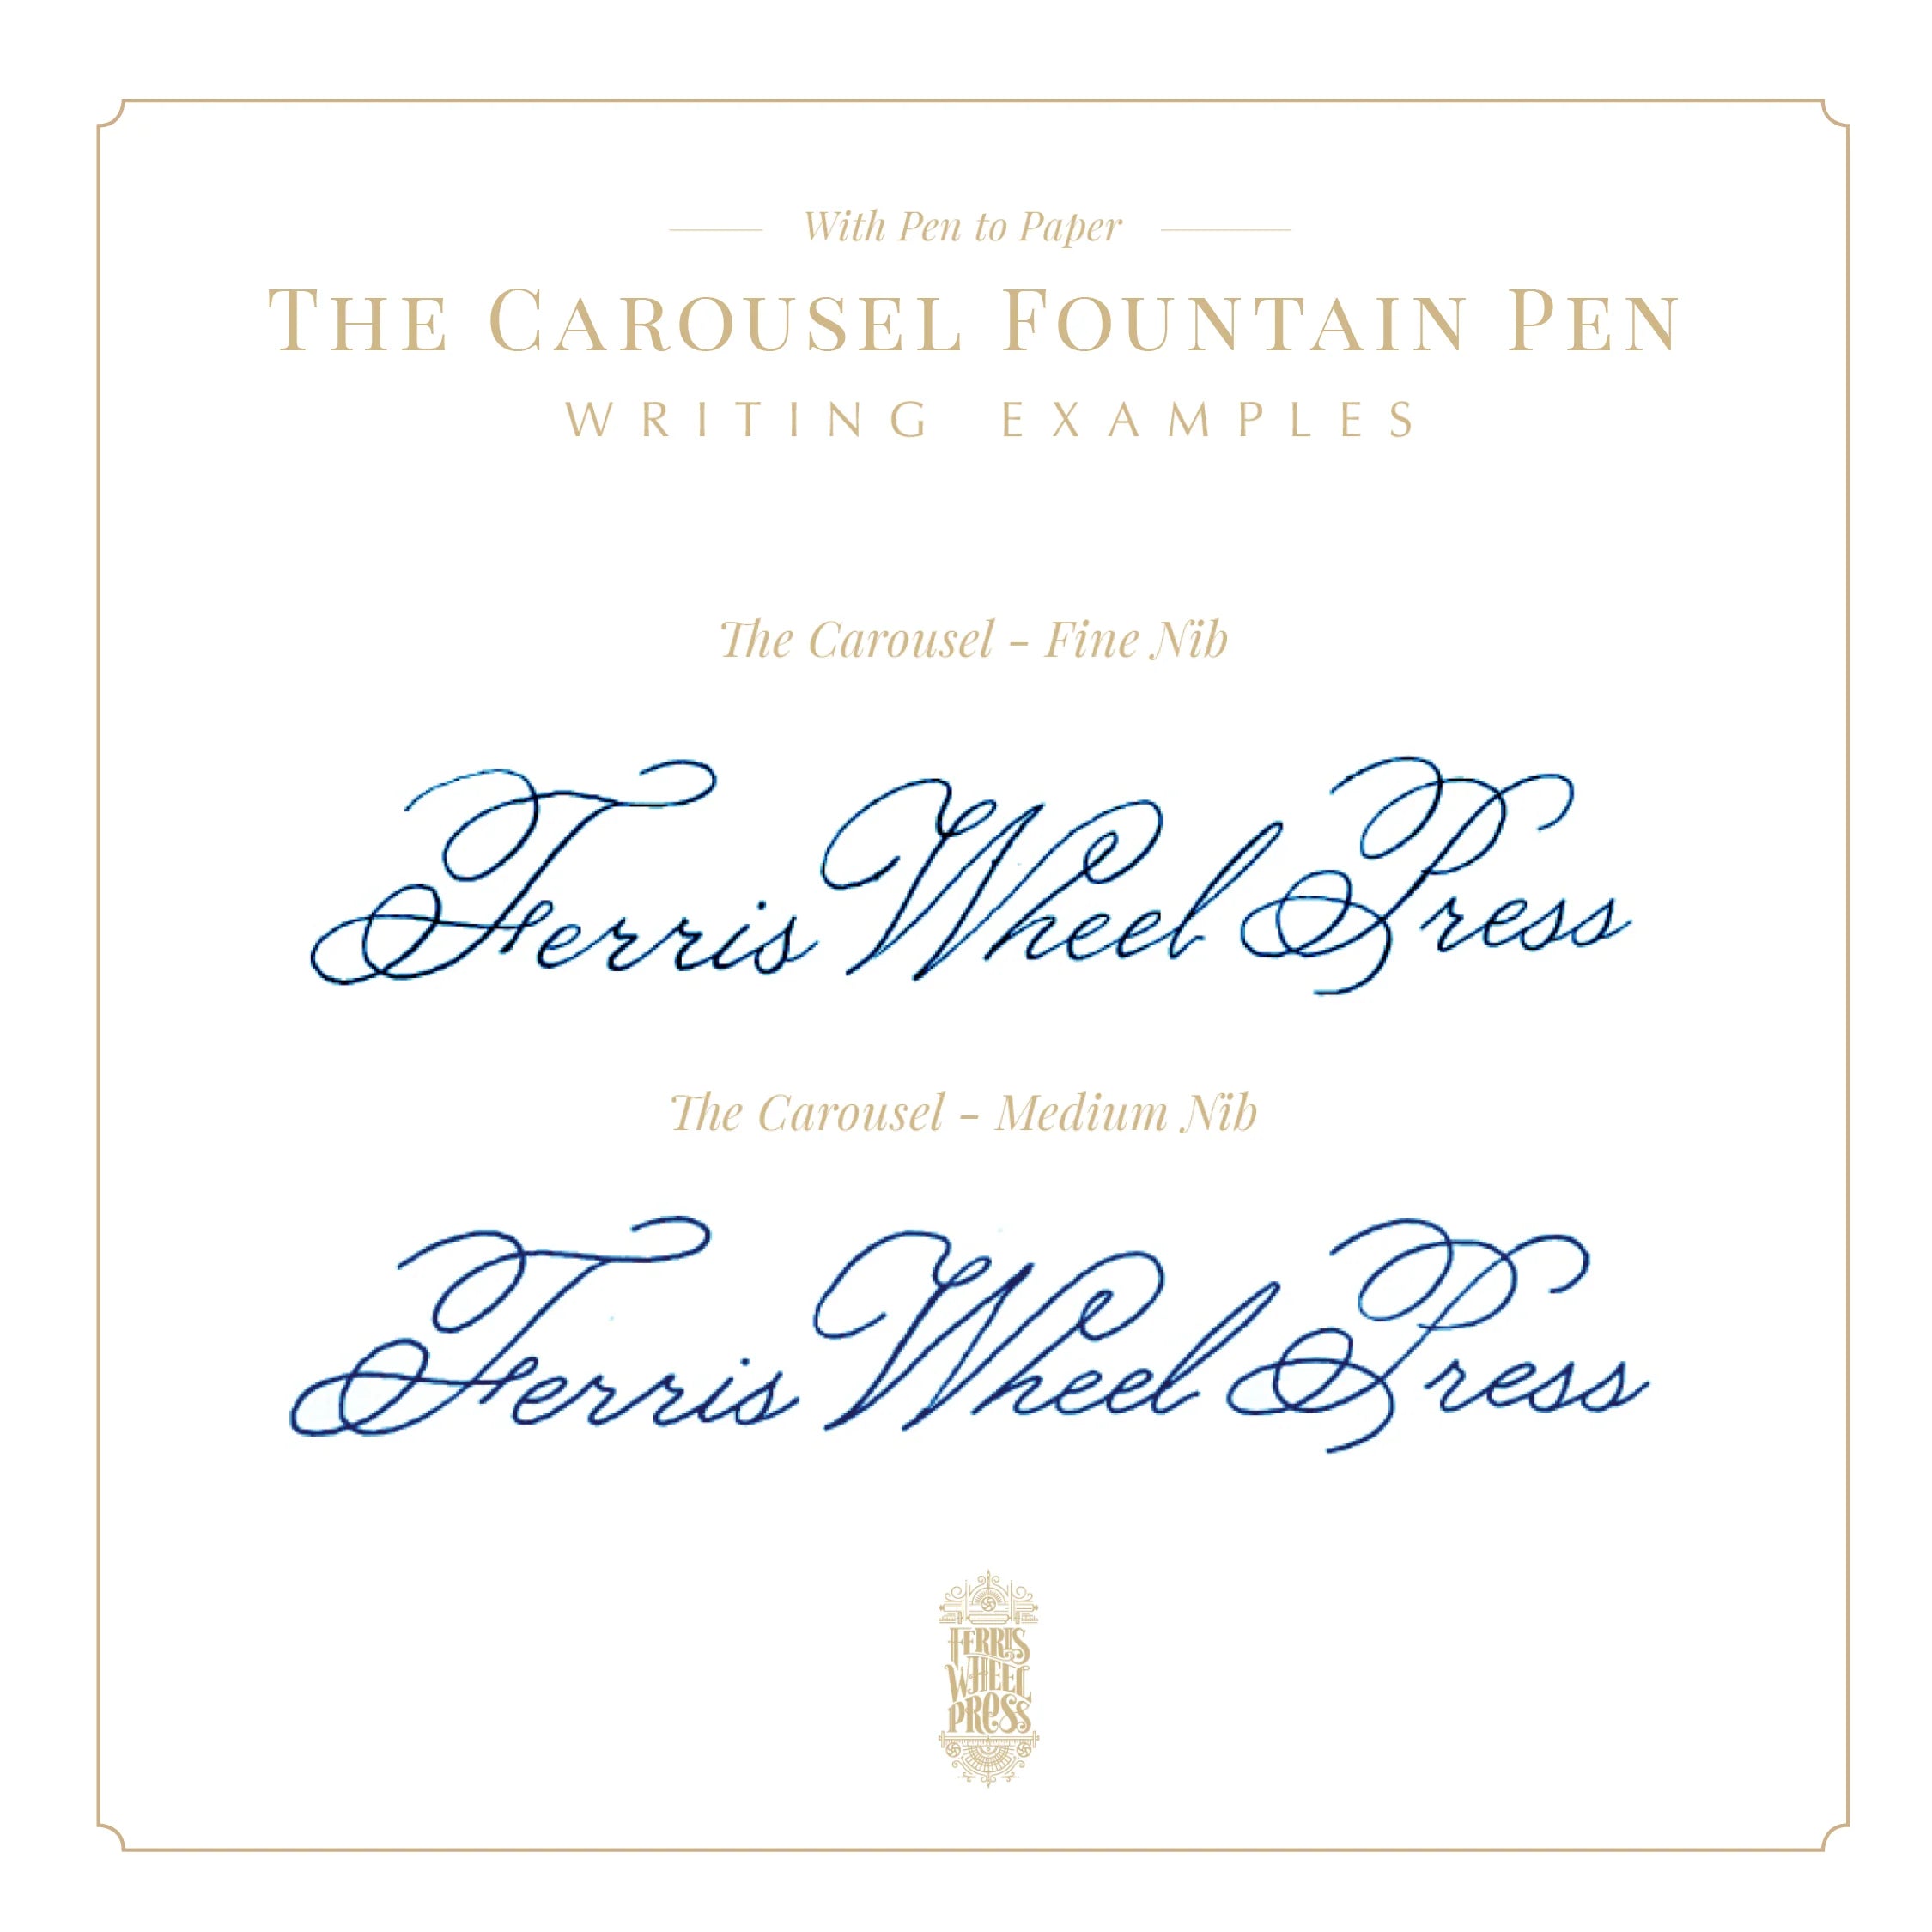 FERRIS WHEEL PRESS Carousel Fountain Pen-Fine Hearty Harvest Ink